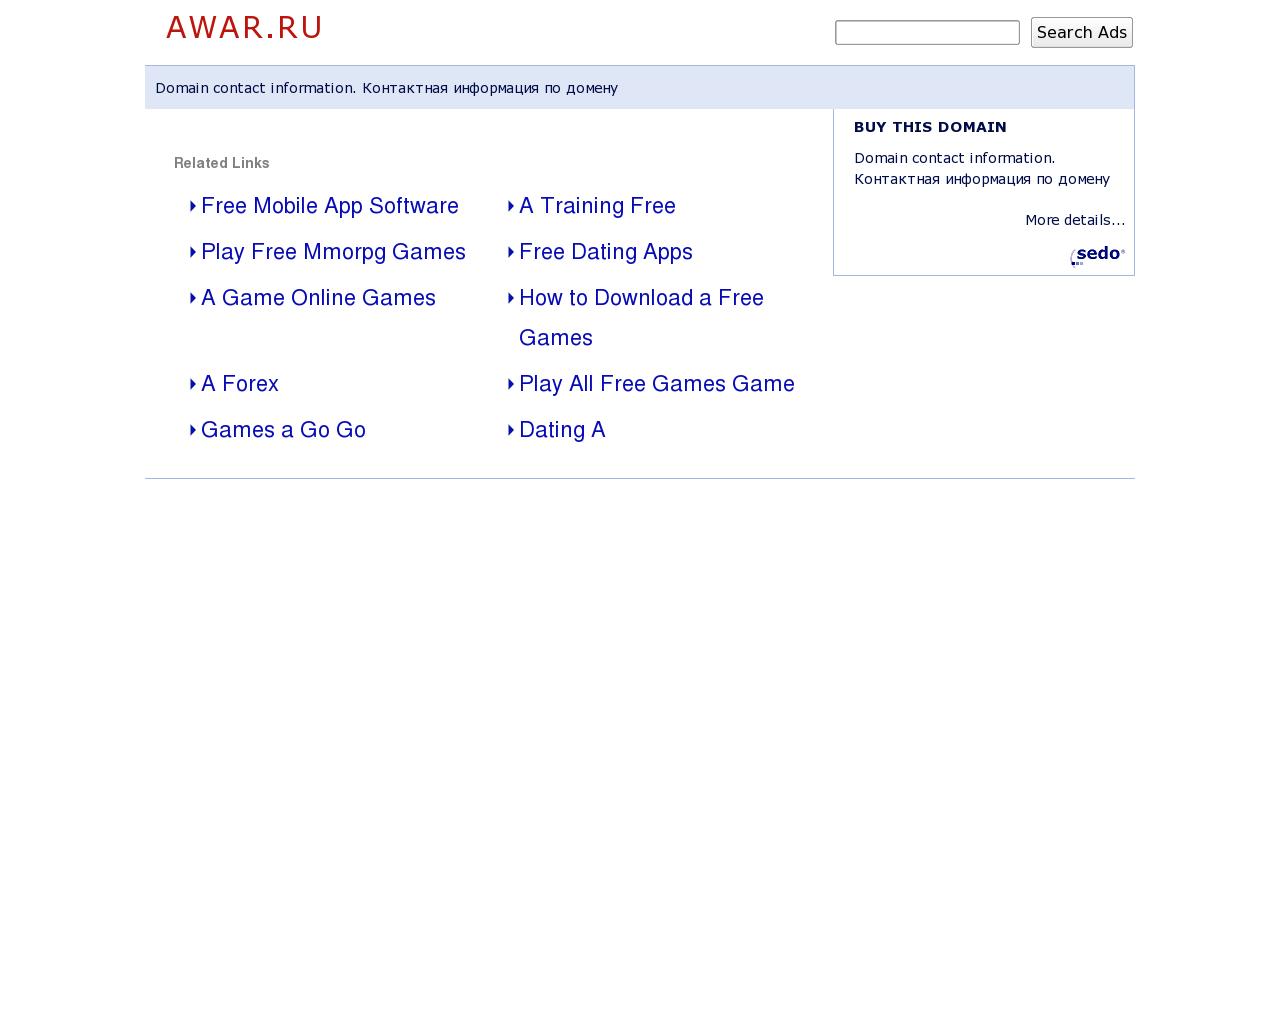 Изображение сайта awar.ru в разрешении 1280x1024